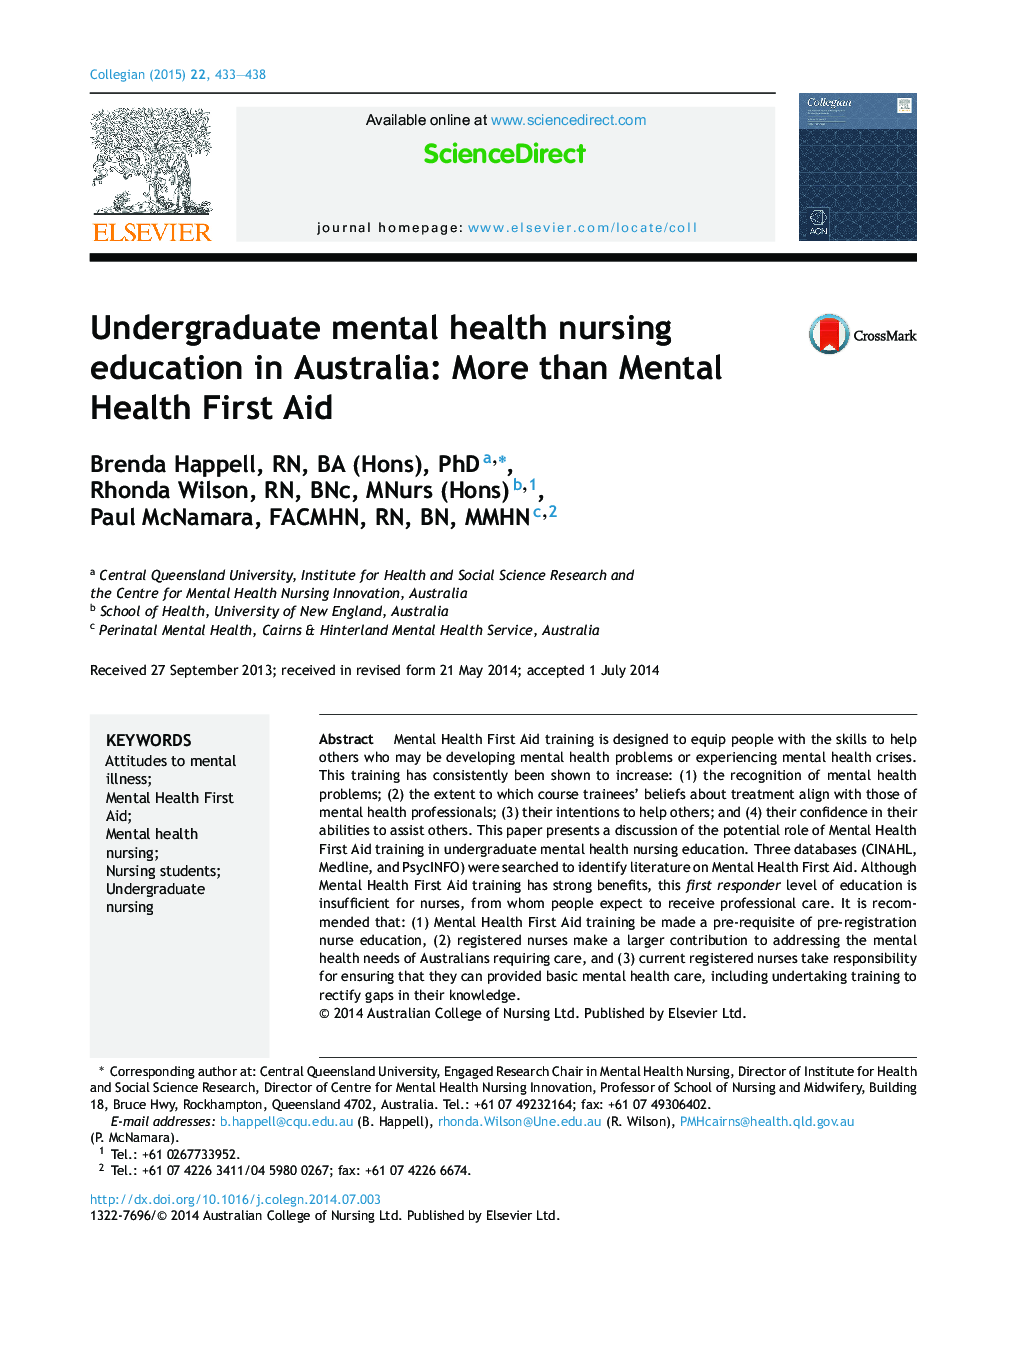 آموزش عالی پرستاری بهداشت روان در استرالیا: بیش از اولویت بهداشت روانی 